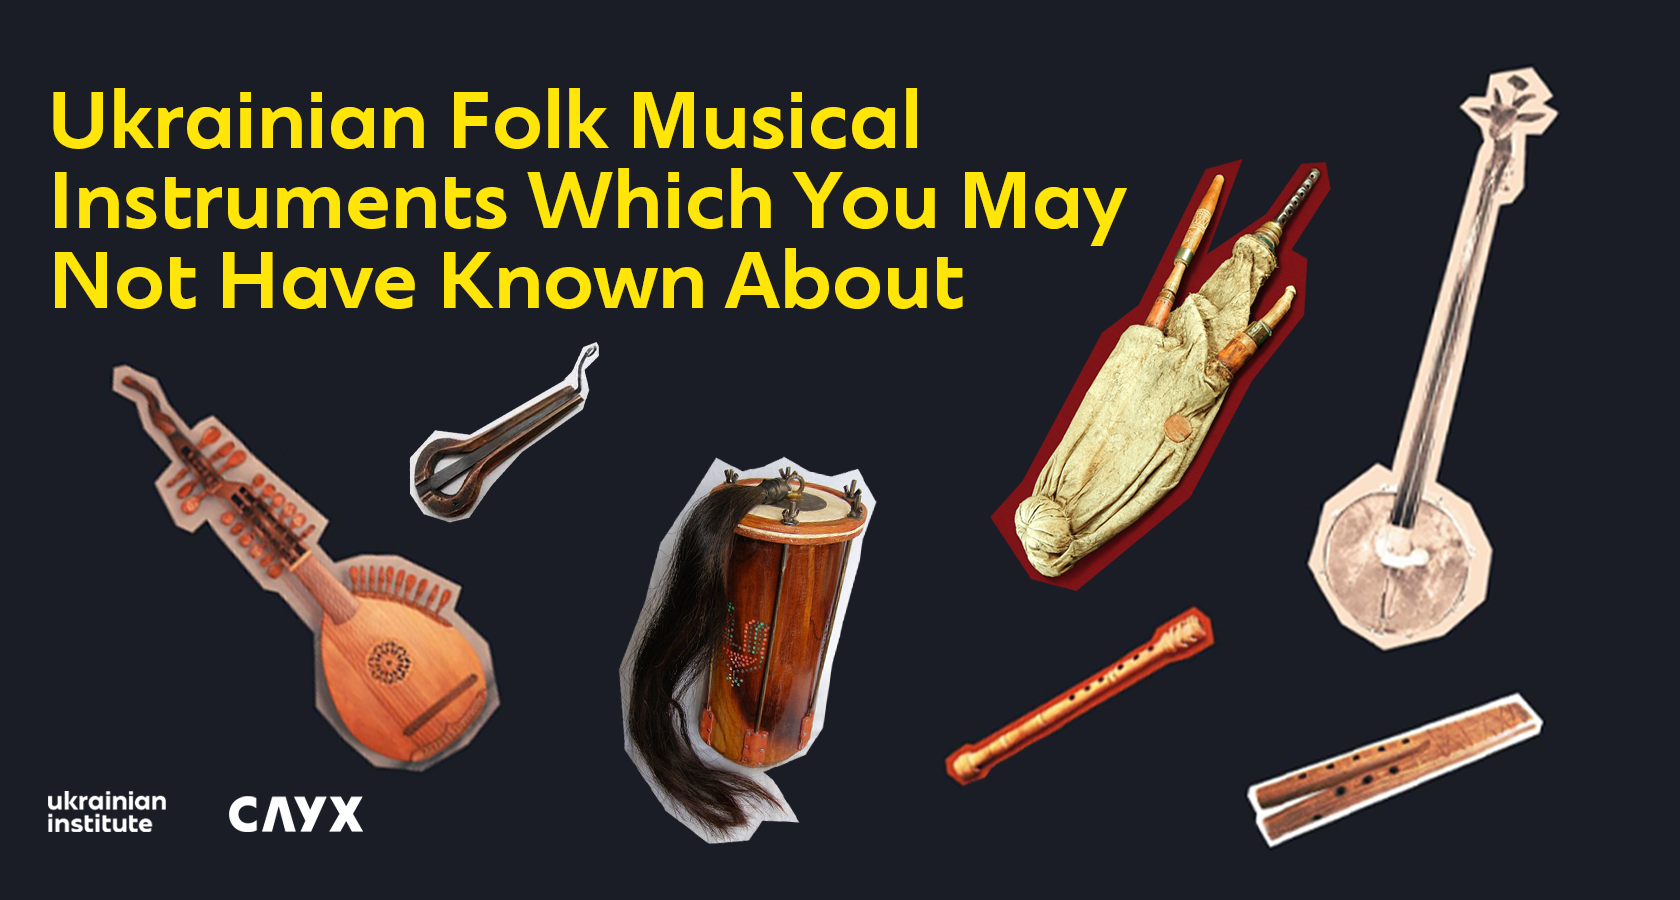 folk instruments-cover 1680х900px-en